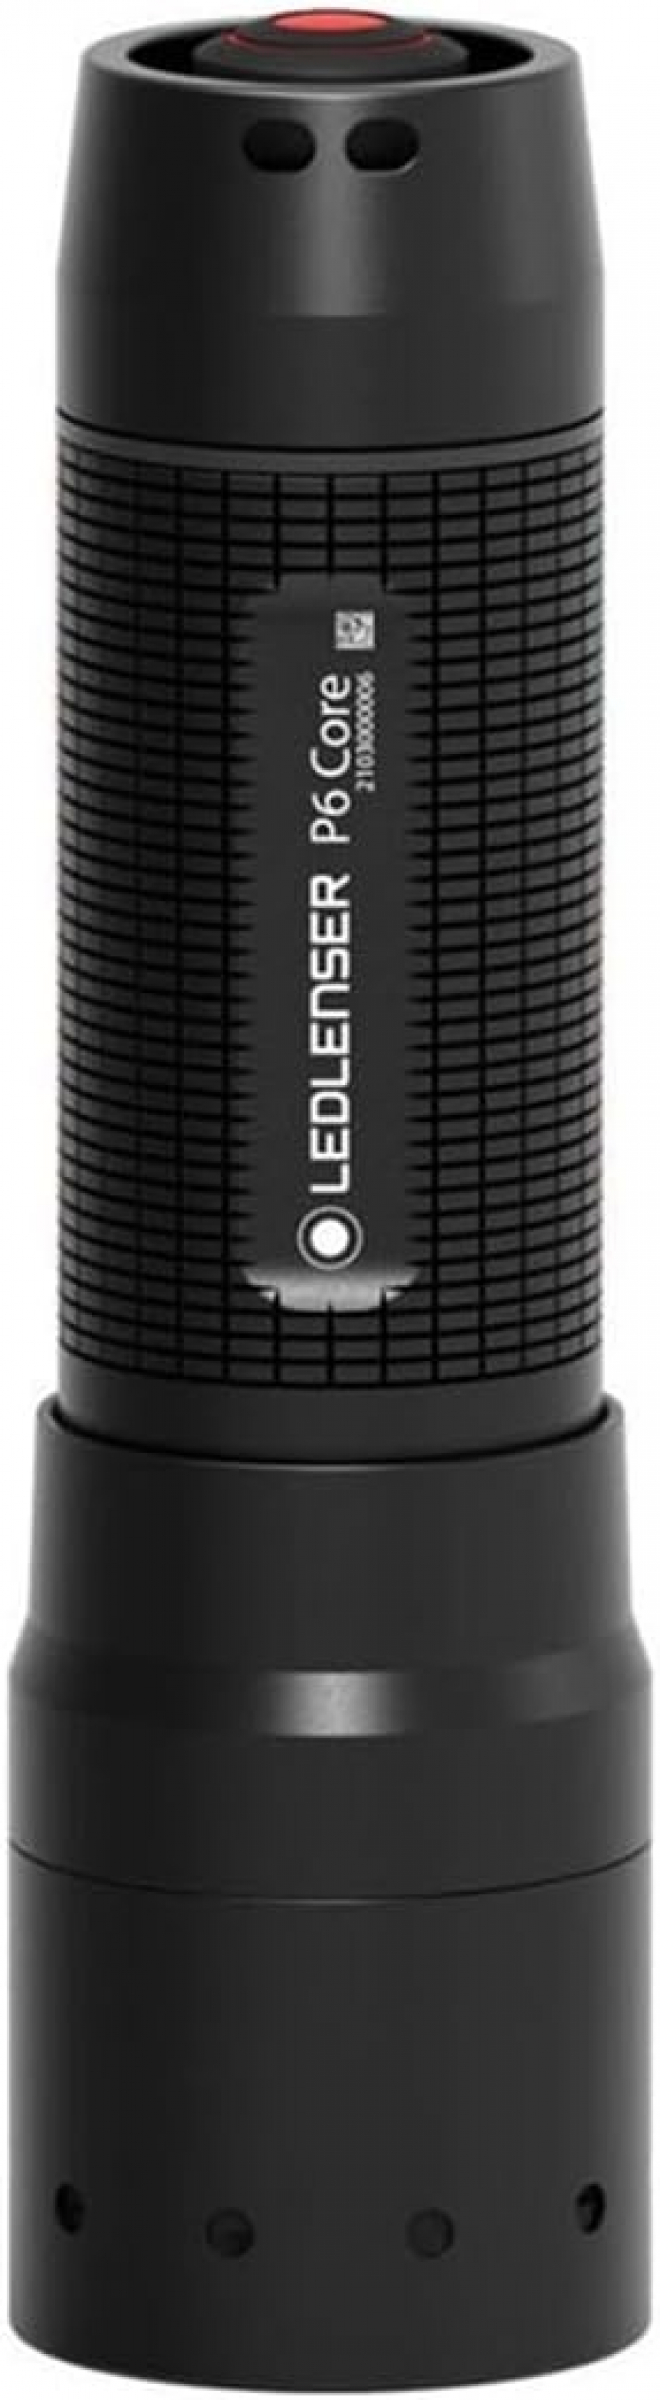 Led Lenser P6 Core inkl. 3x AAA Batterien